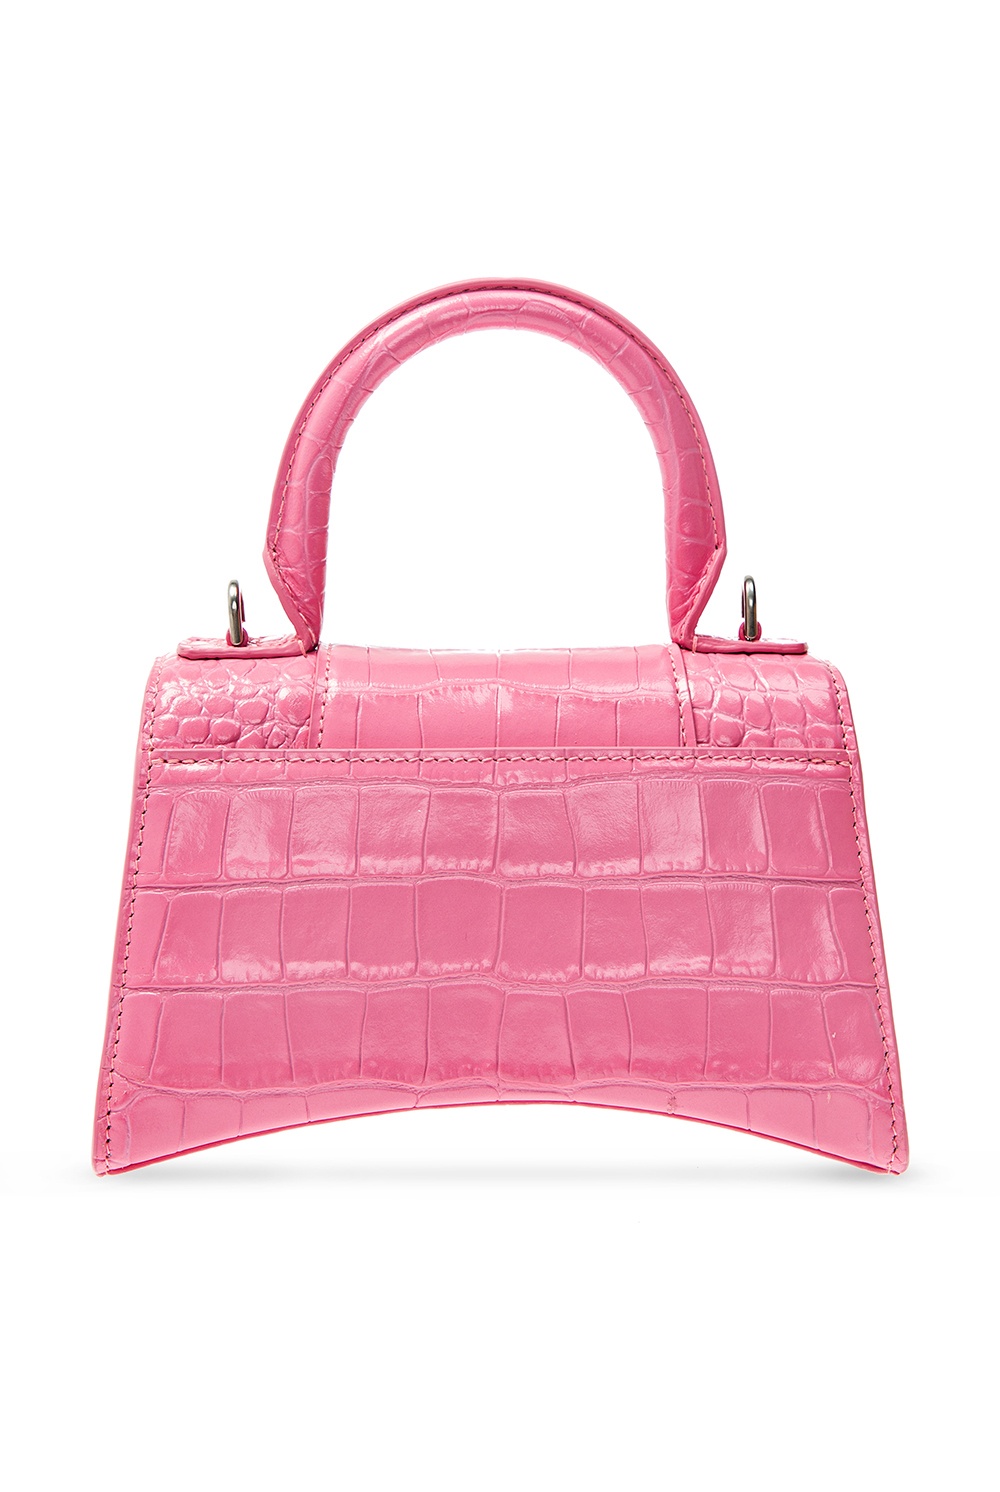 Pink Leather Fanny Pack for Women Pink - LaBanane Alligator